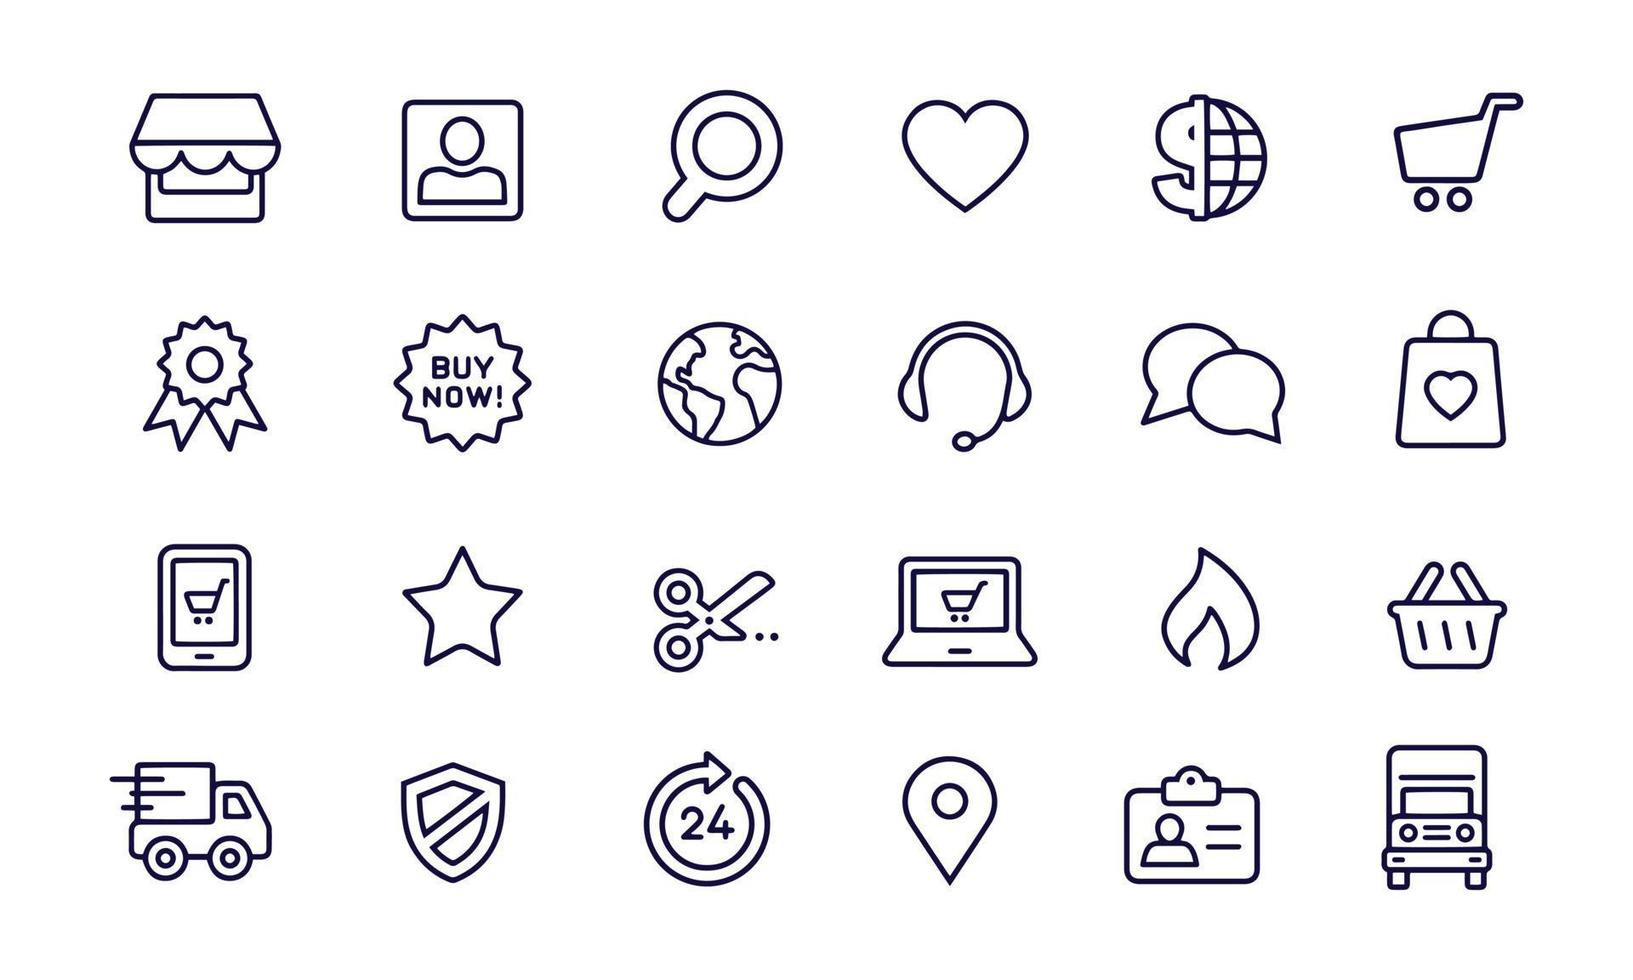 E-Shopping icons vector design